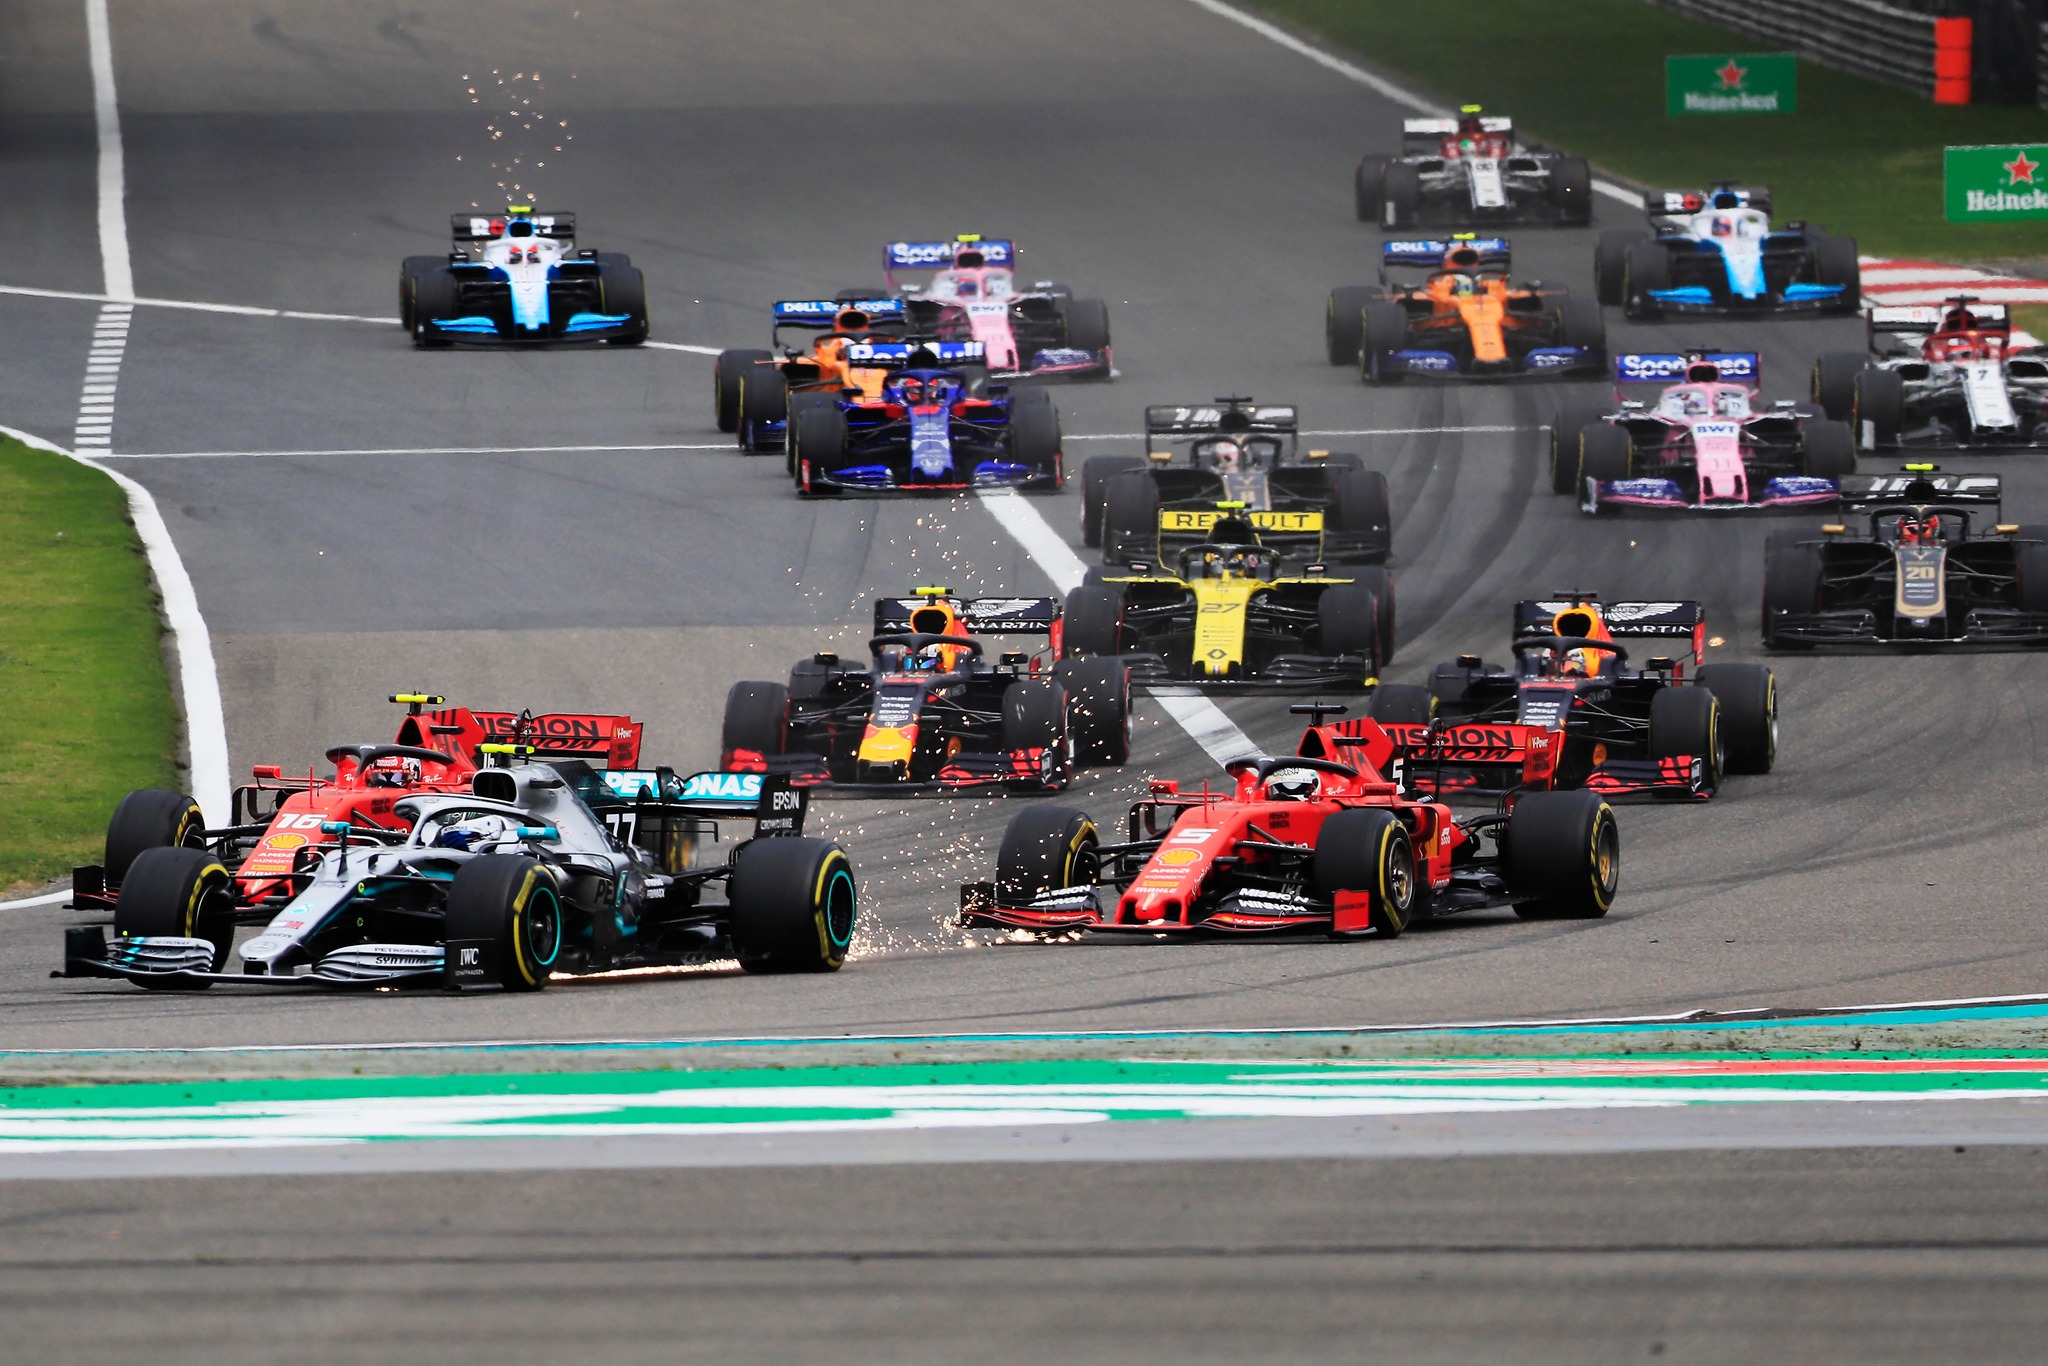 ¿Por qué la Fórmula 1 se considera un deporte? – LíderLife